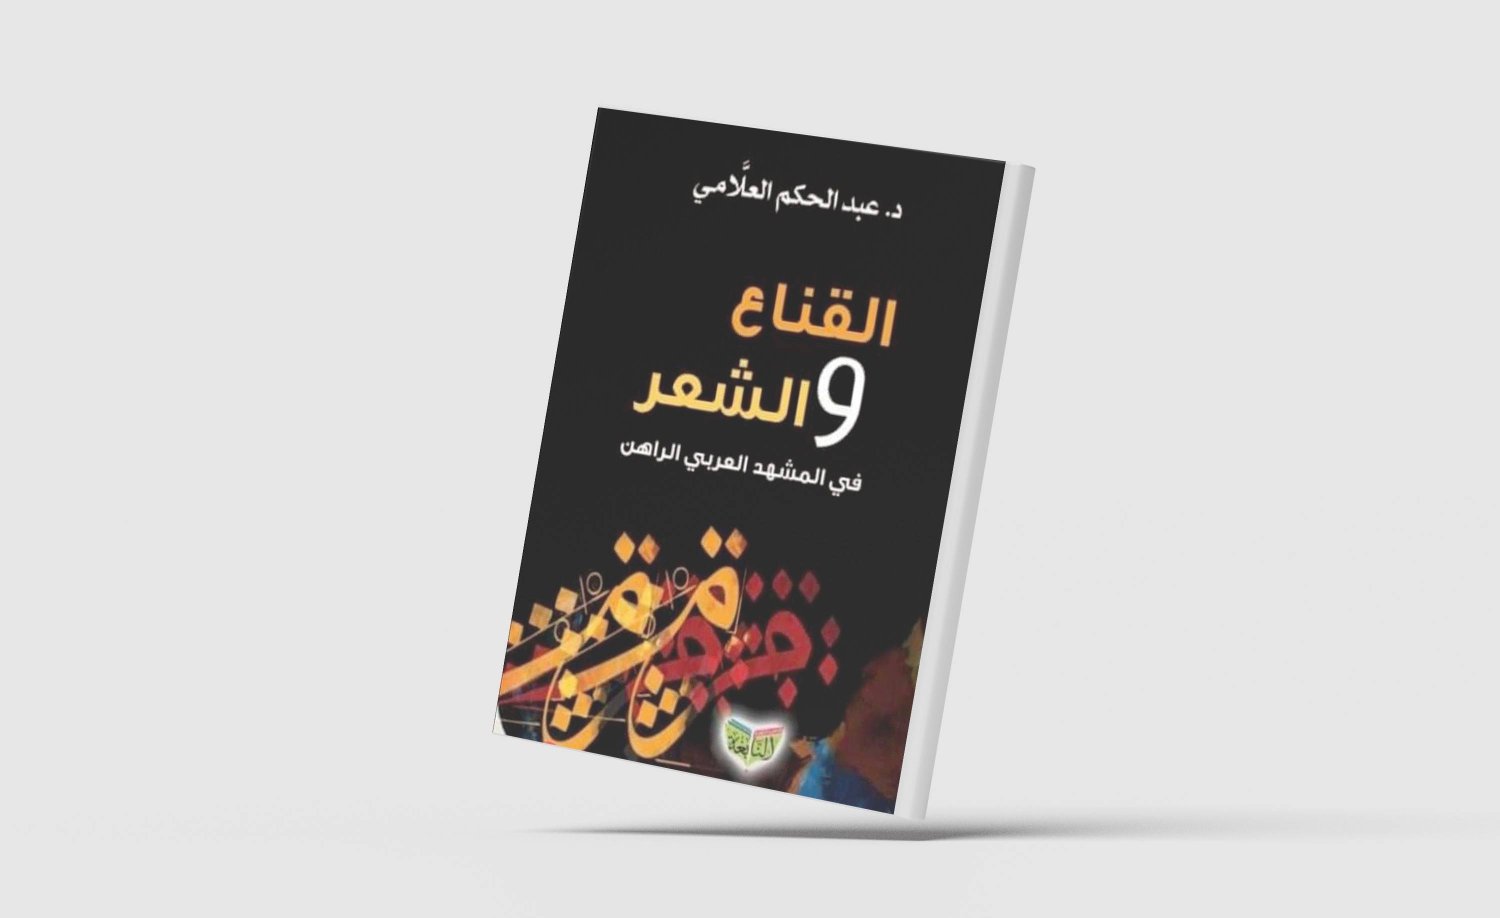  غلاف كتاب «القناع والشعر» للناقد الأكاديمي دكتور عبد الحكيم العلَّامي